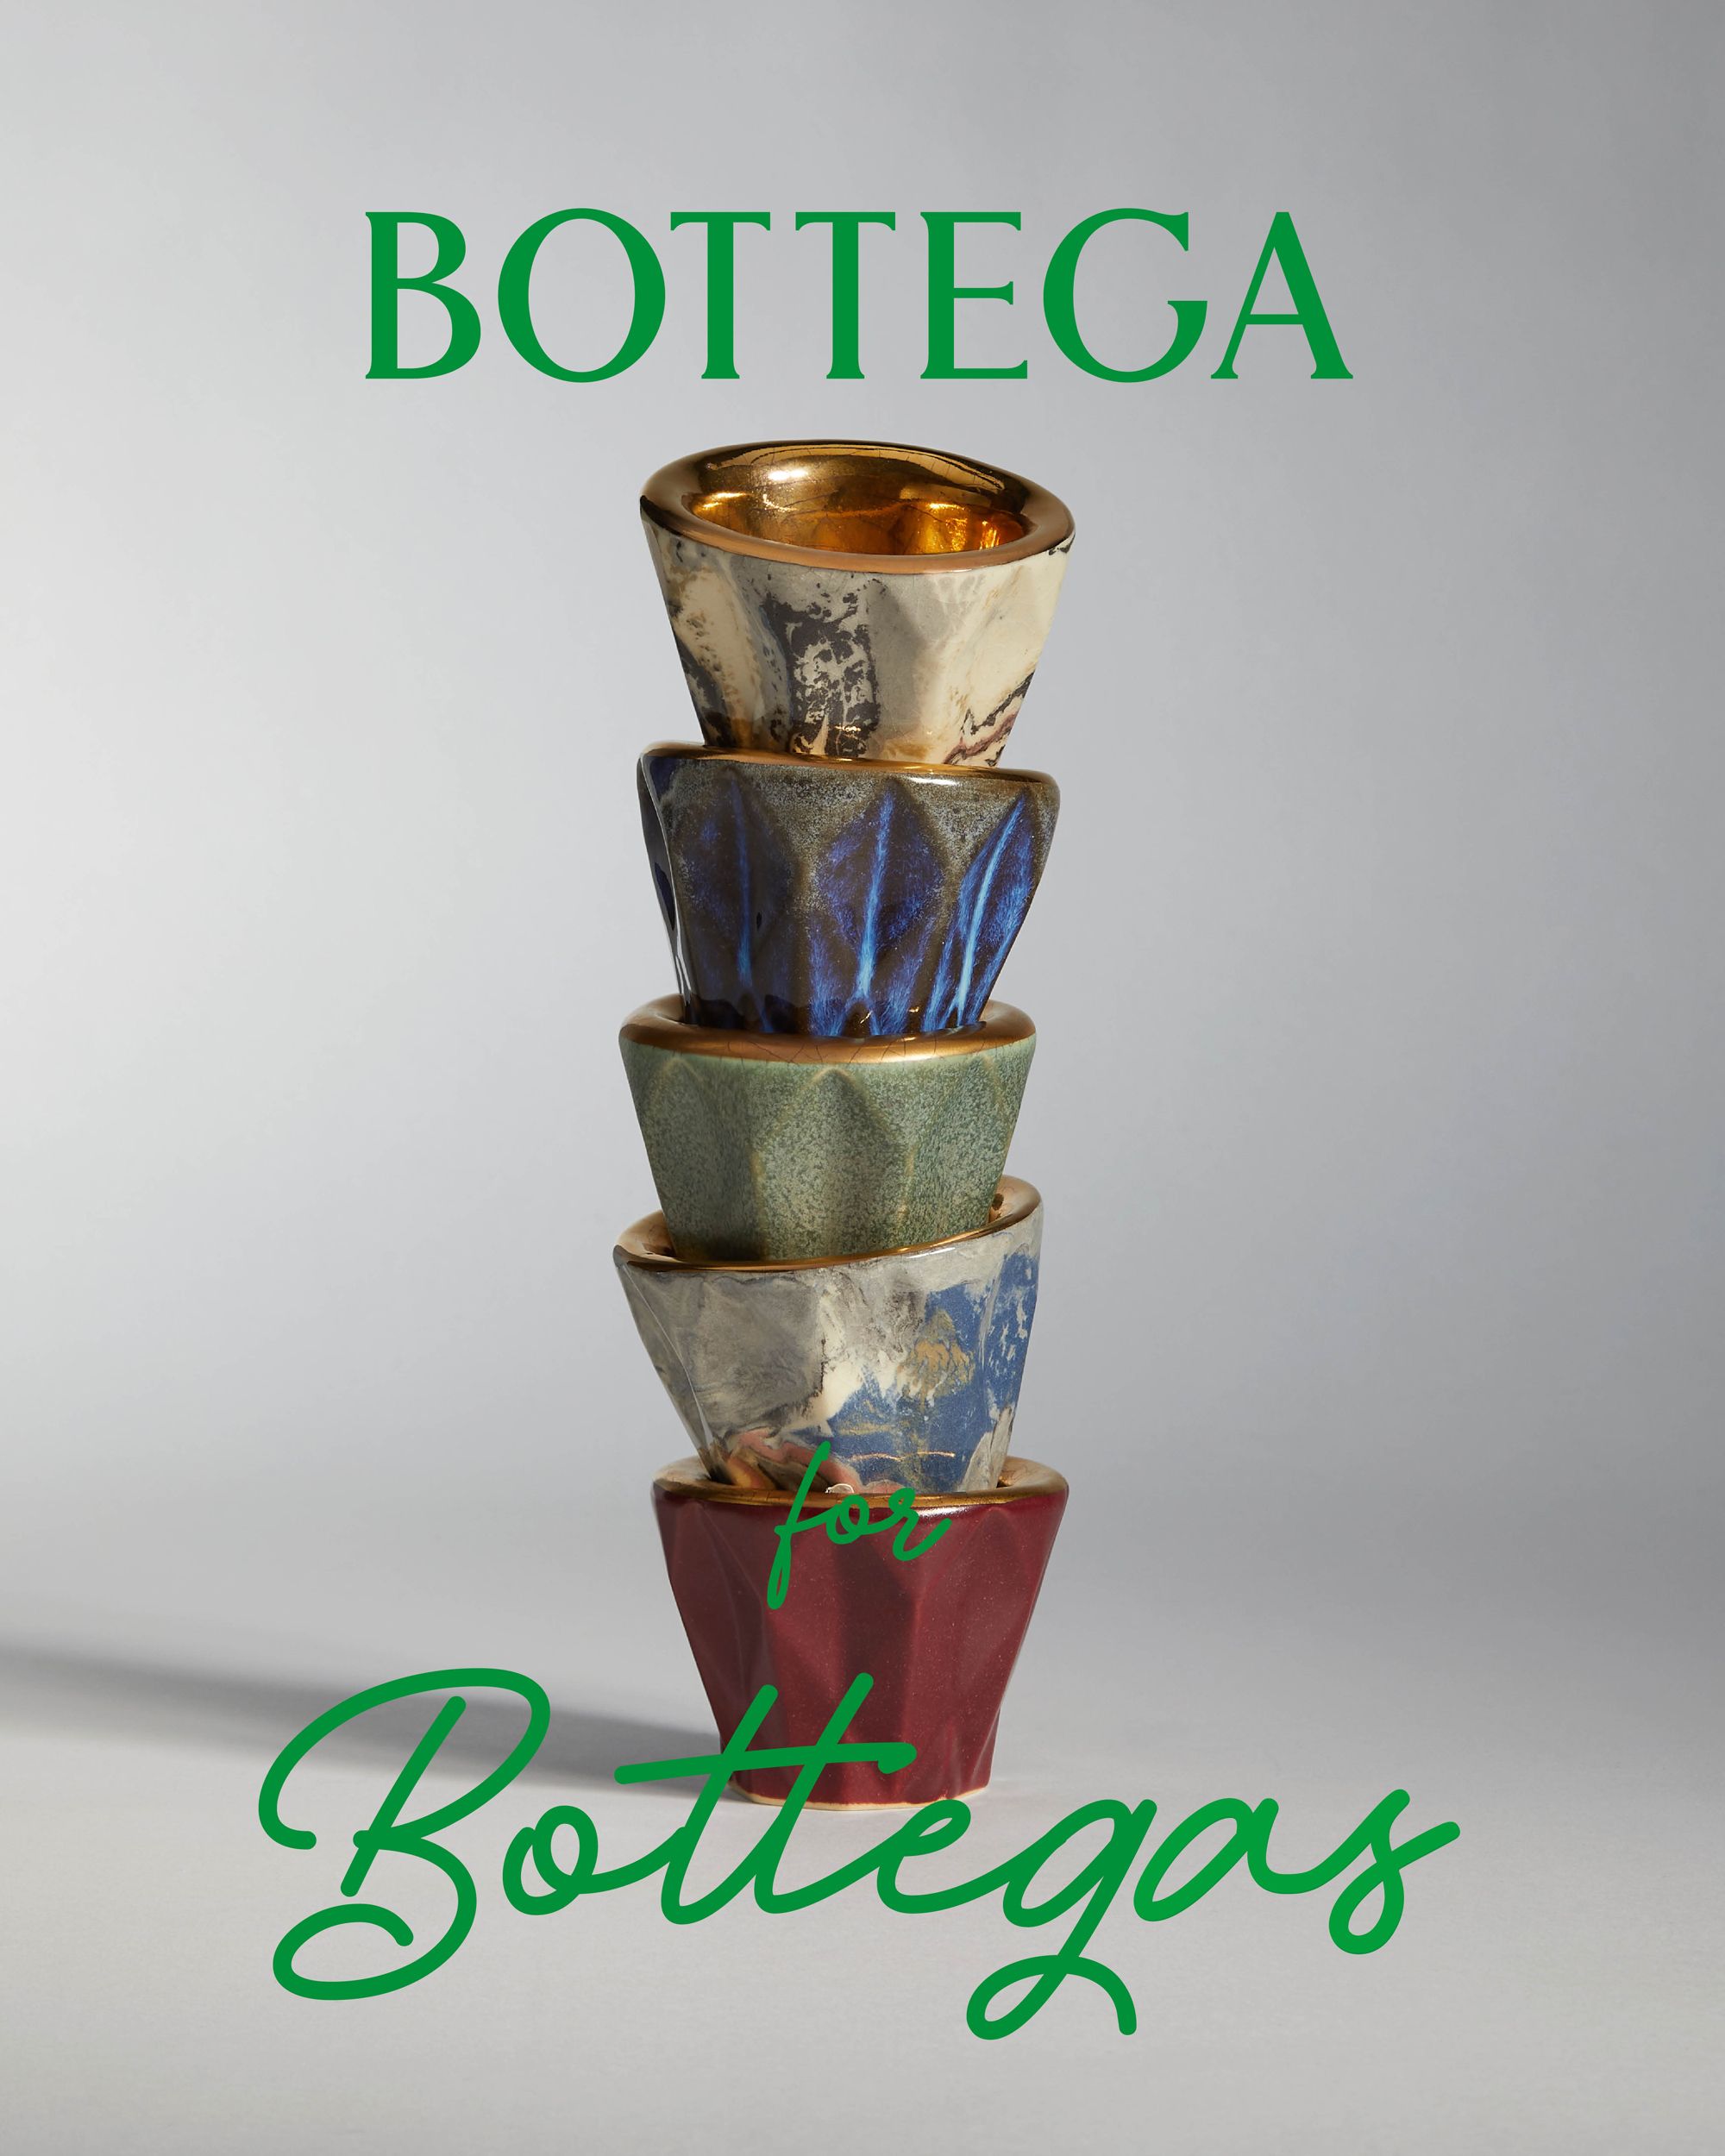 ボッテガ・ヴェネタ」が世界中のものづくりや生産者を支援！ “ボッテガ